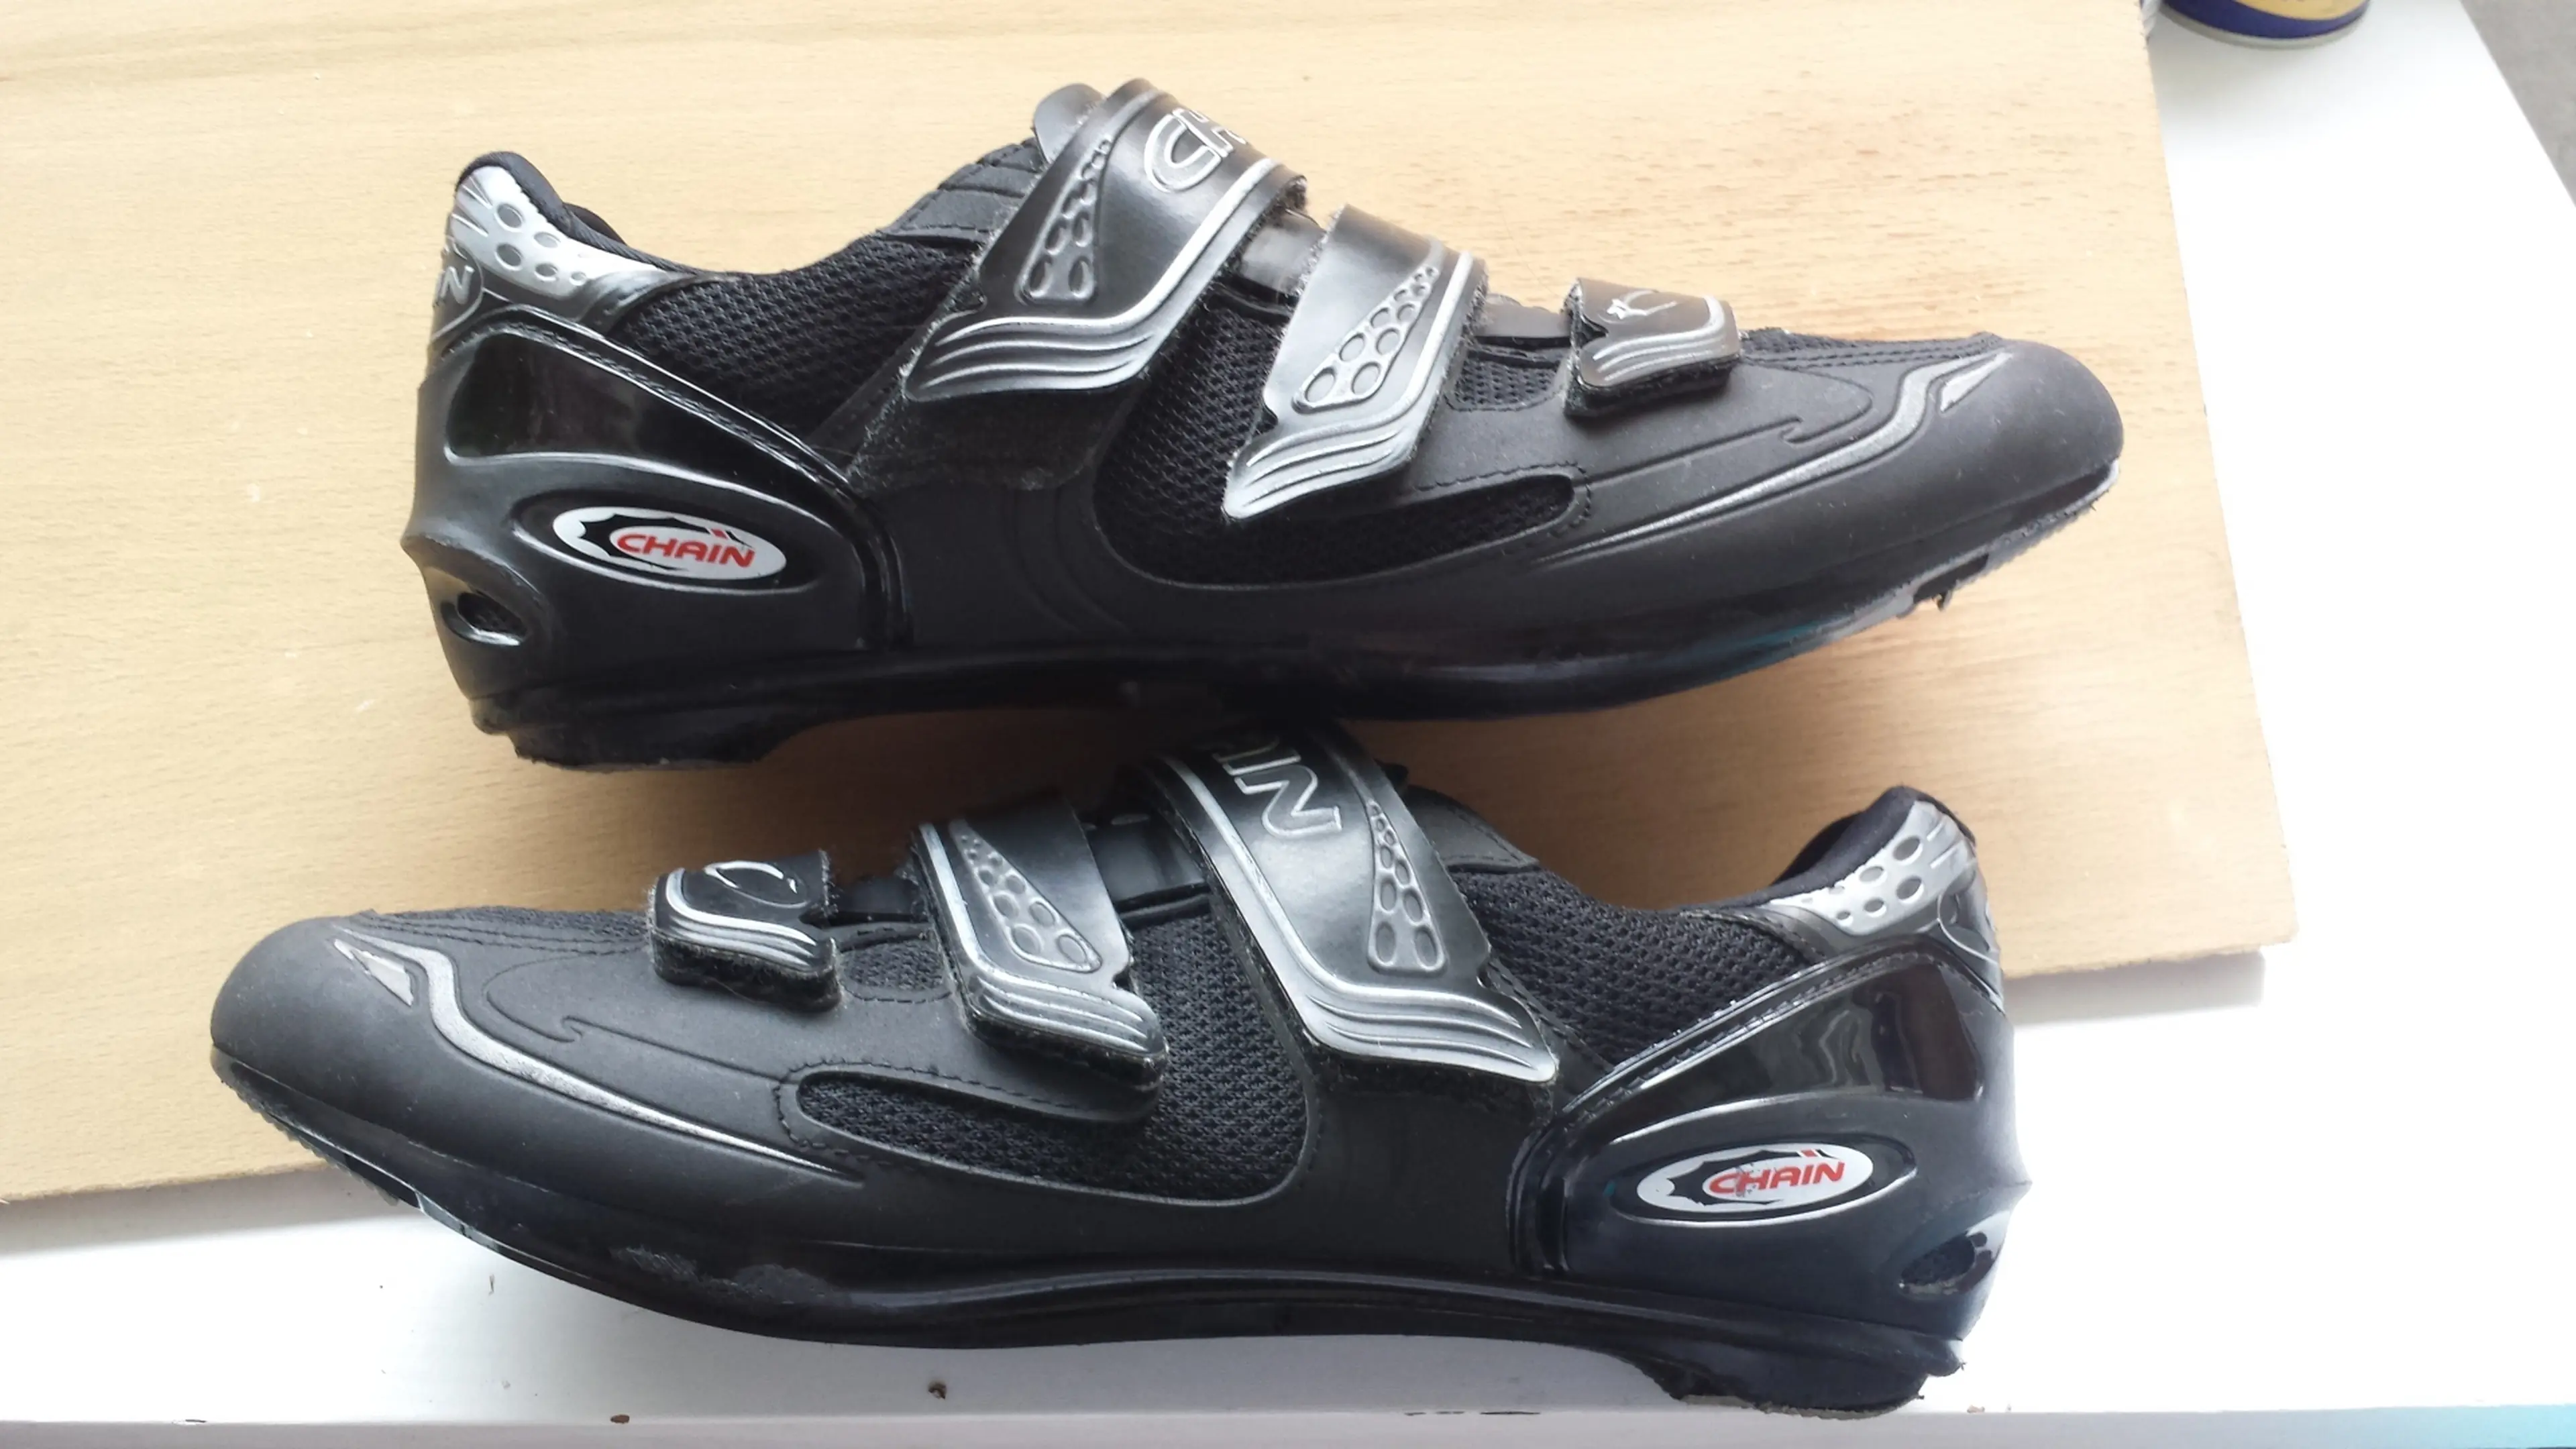 Image De vânzare pantofi ciclism CHAIN